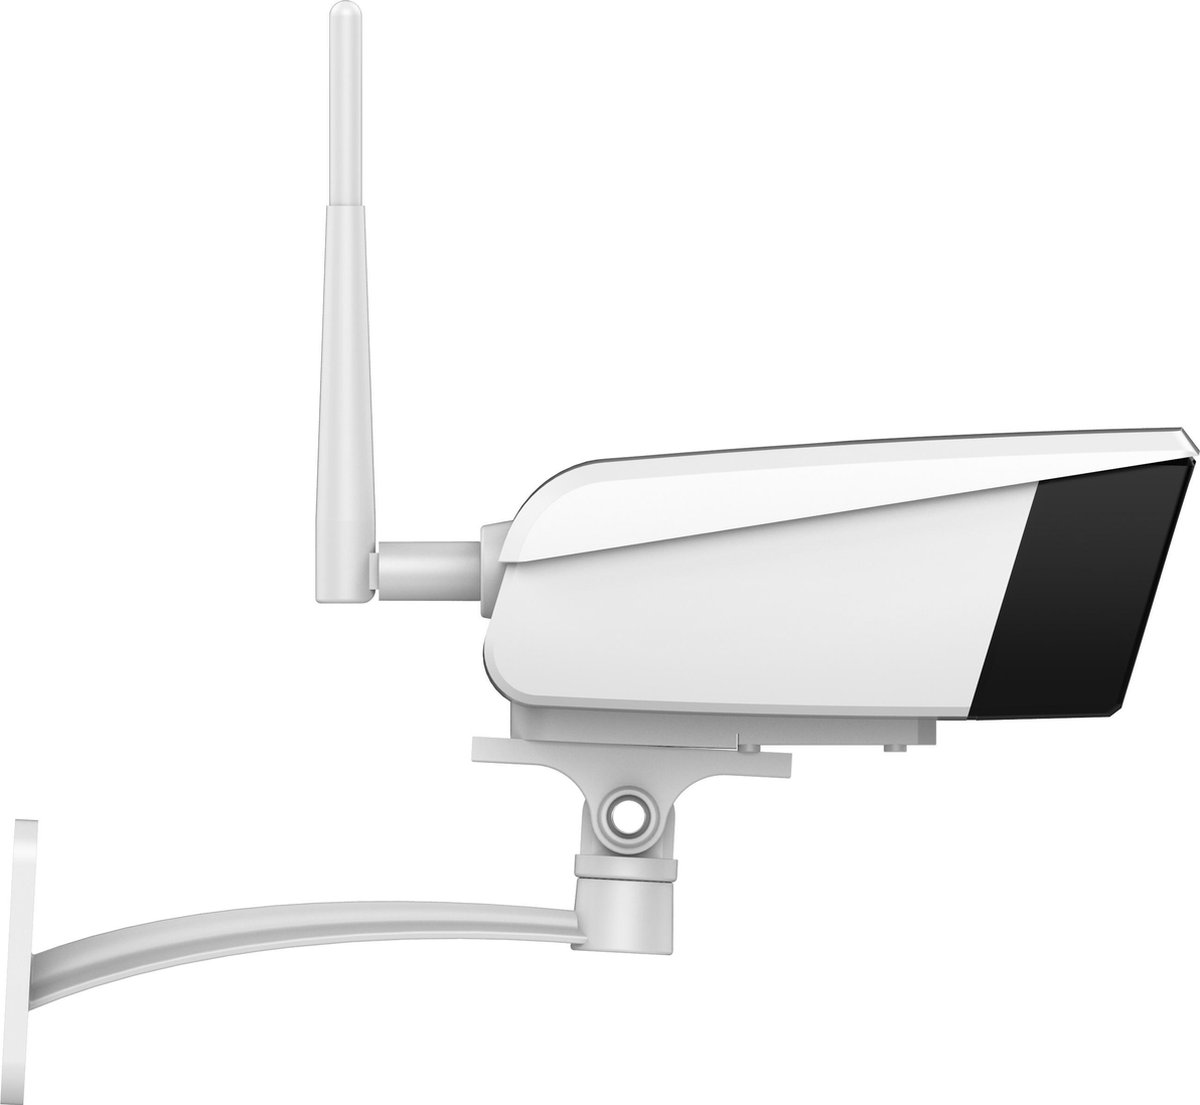 Vimtag B4(2MP) bewakingscamera Doos IP-beveiligingscamera Binnen & buiten 1920 x 1080 Pixels Muur